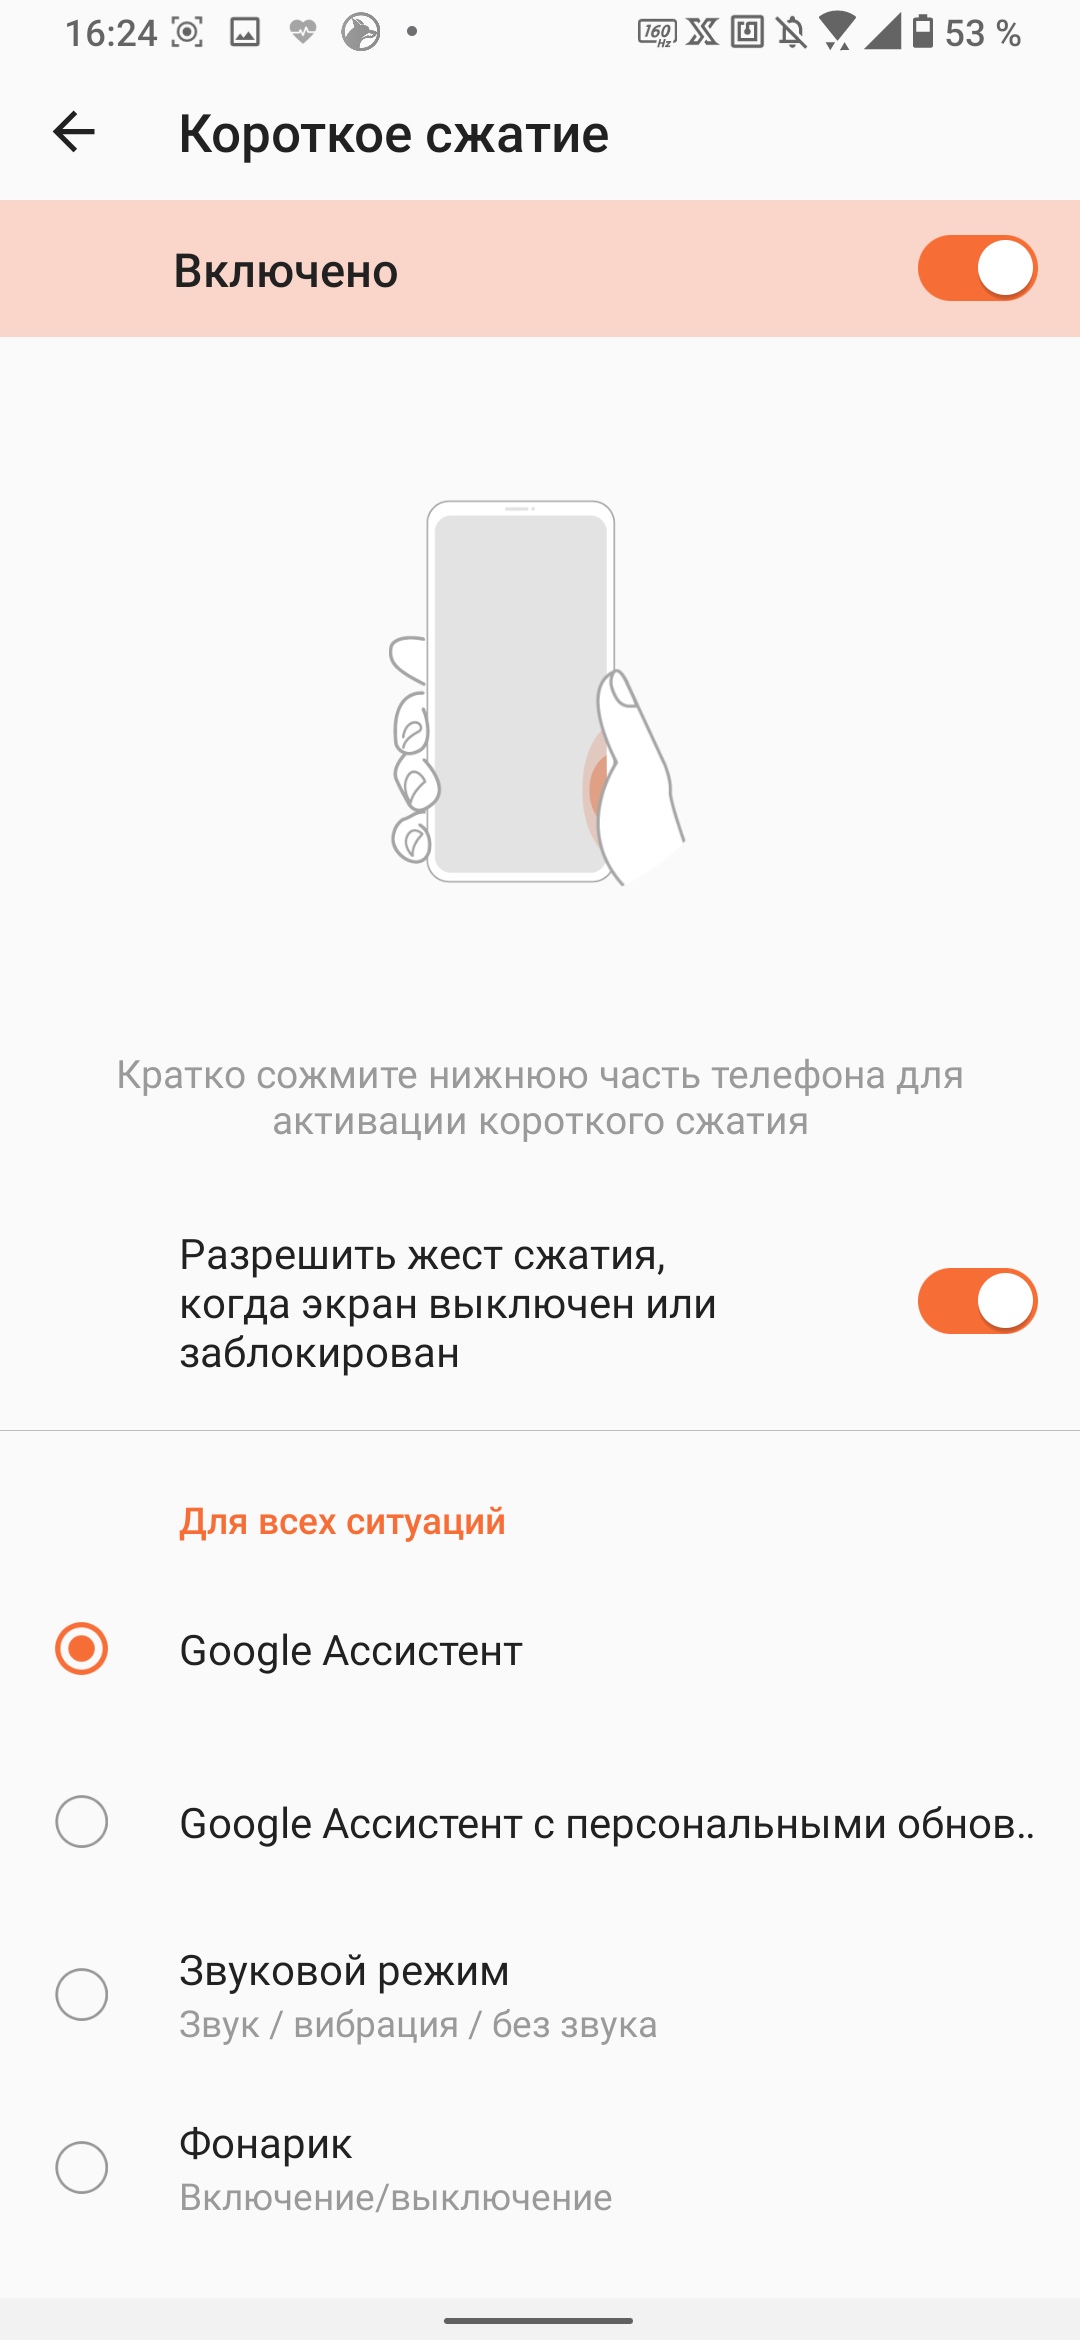  Обзор ASUS ROG Phone 3: топовый смартфон для игр Другие устройства  - obzor_asus_rog_phone_3_luchshij_igrovoj_smartfon_20203_picture40_1